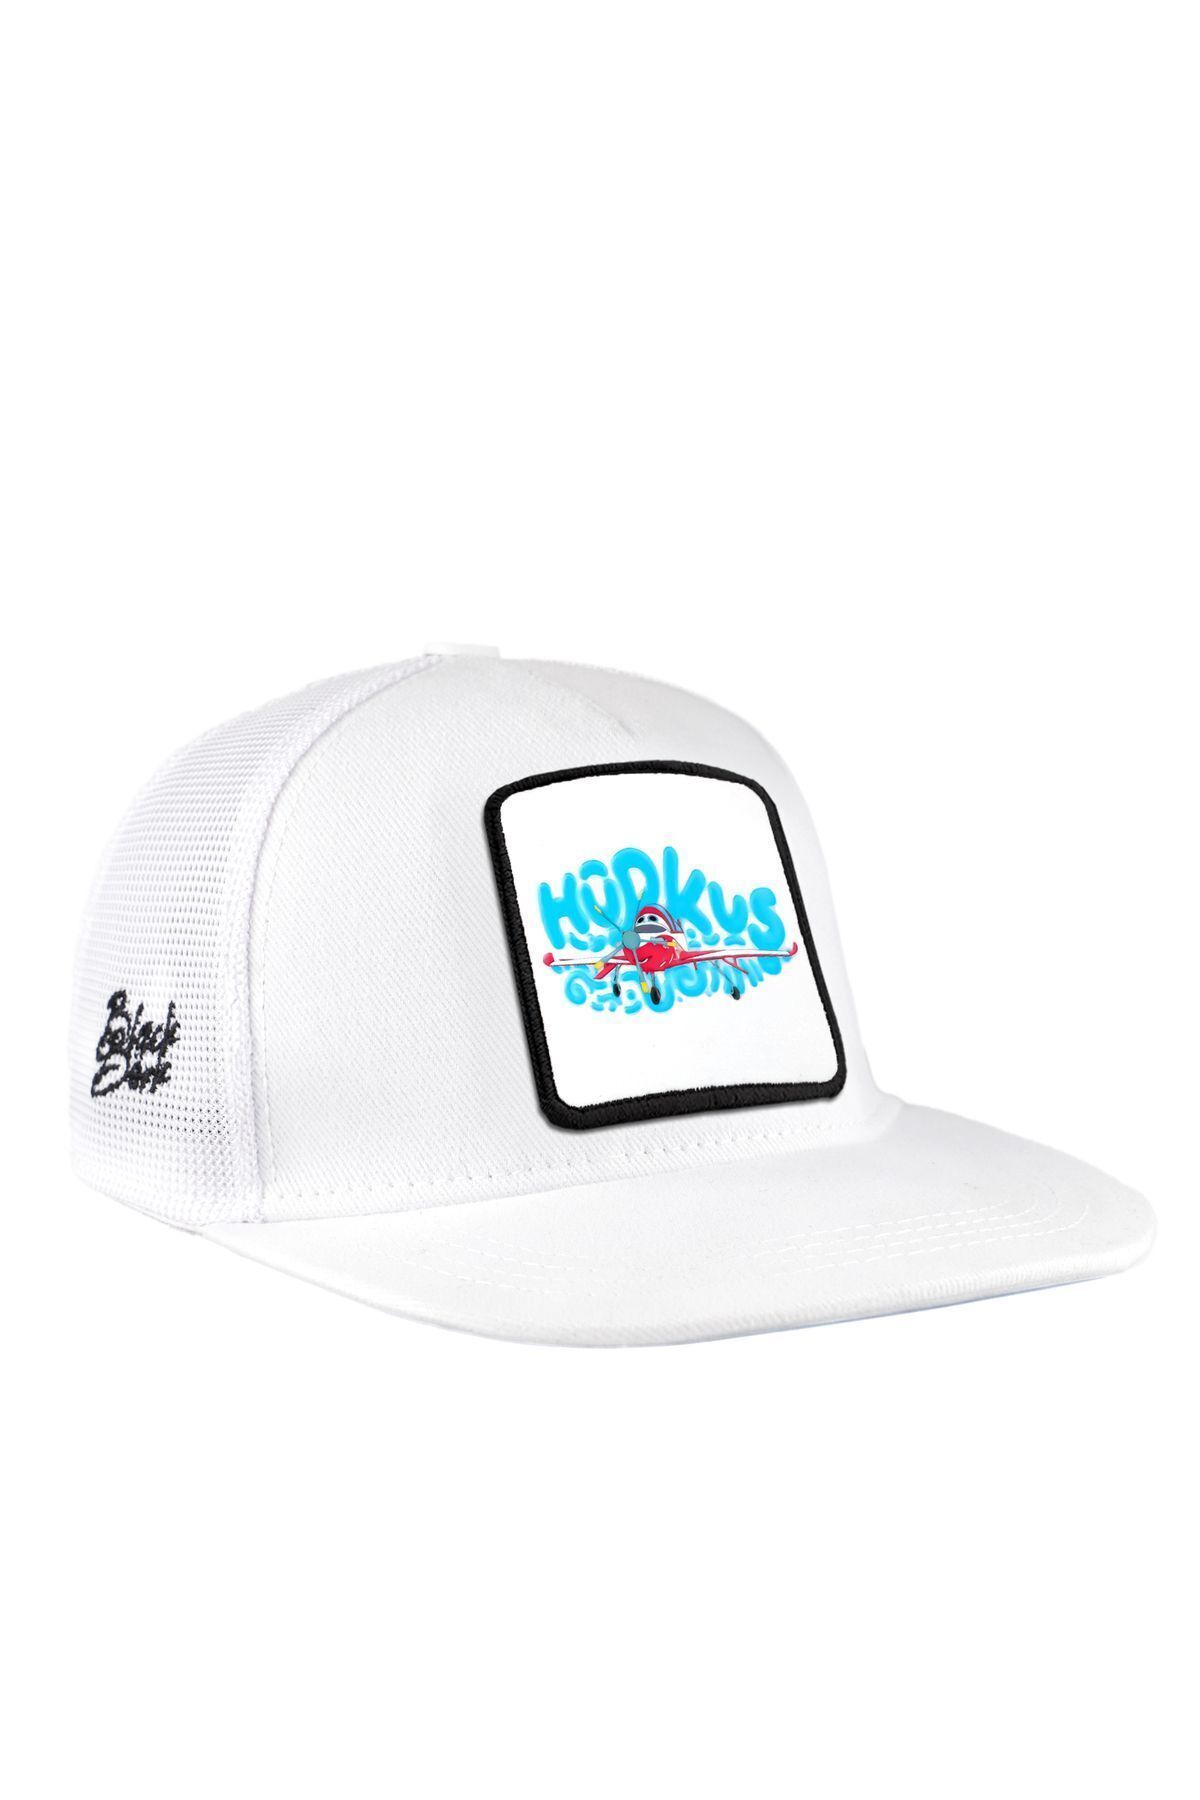 BlackBörk V1 Trucker Hip Hop Kids Bulutların Arasında Hürkuş Lisanlı Beyaz Çocuk Şapka